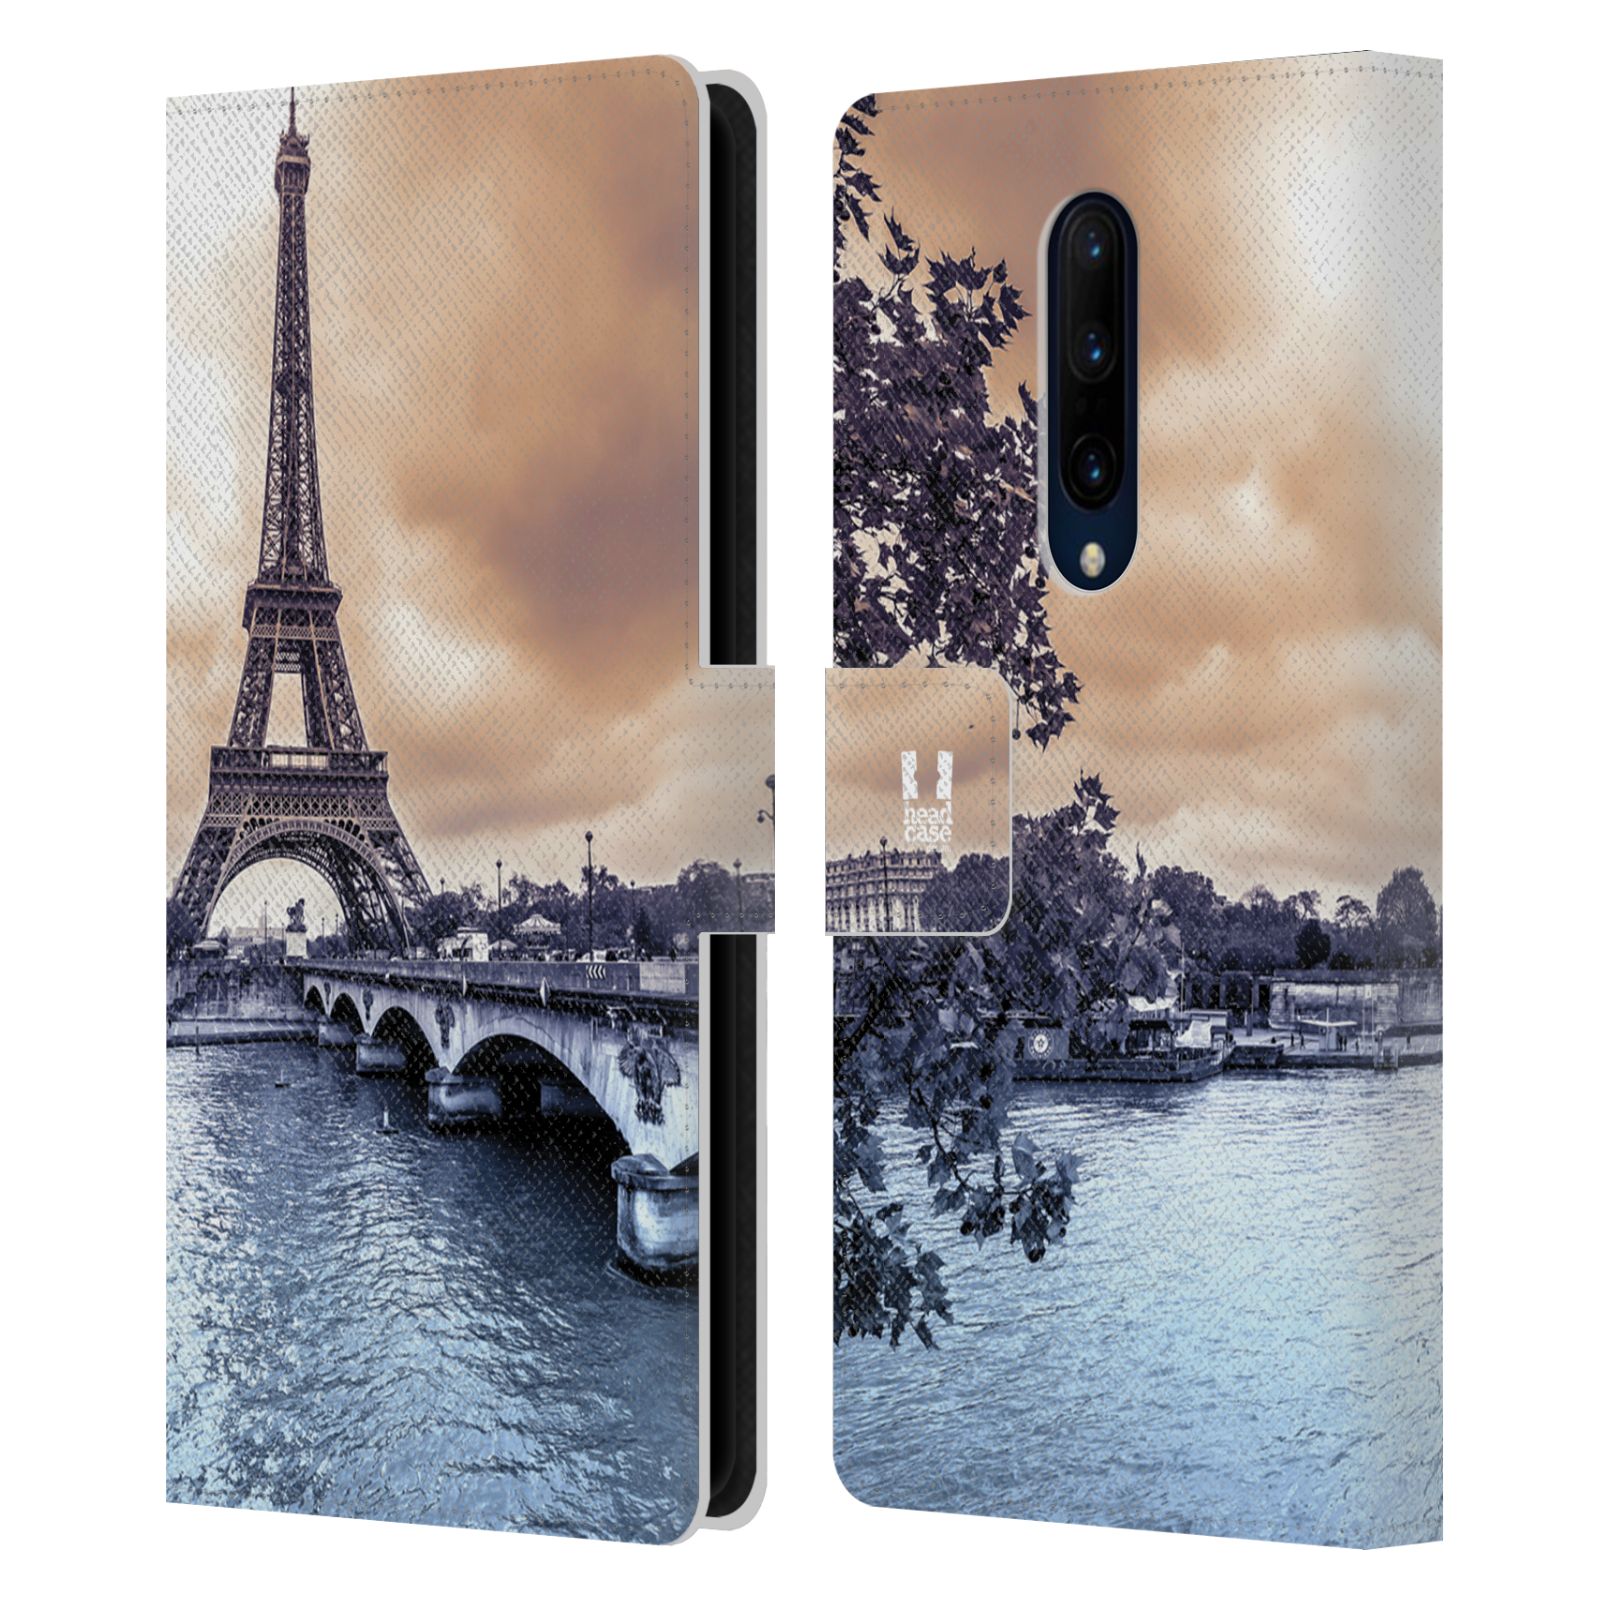 Pouzdro pro mobil OnePlus 7 PRO  - Eiffelova věž Paříž - Francie